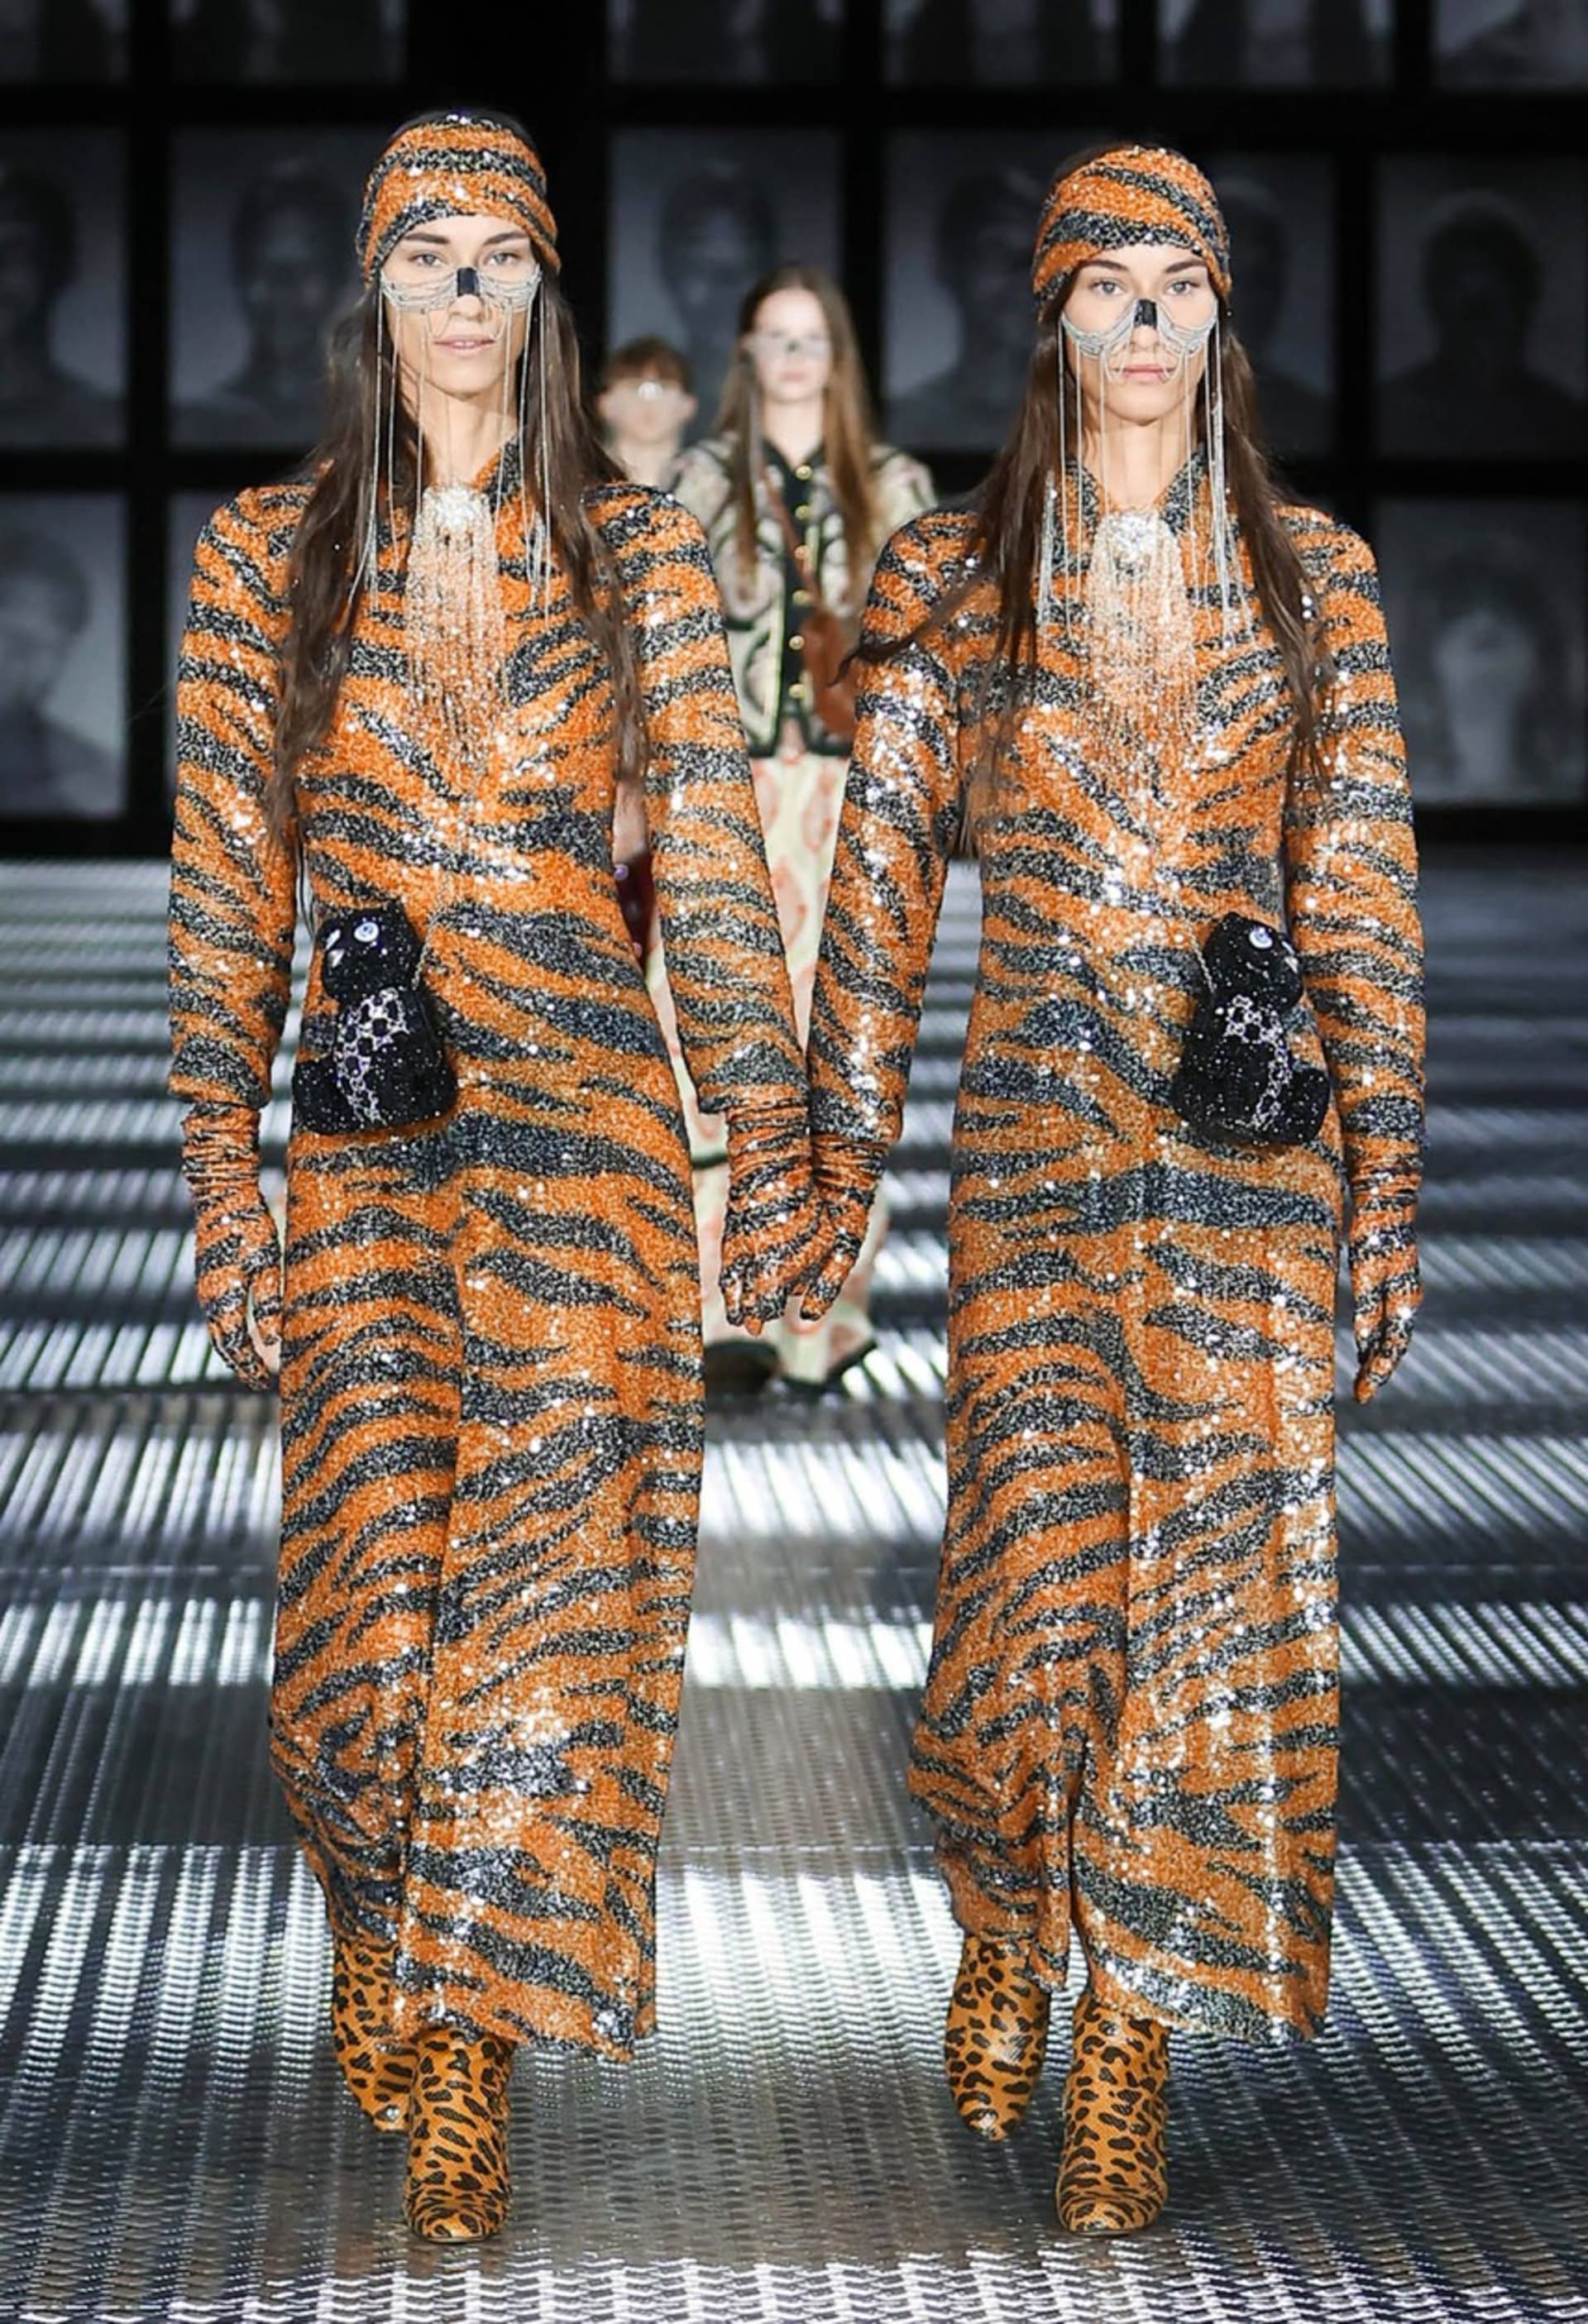 Dvojčata na módní přehlídce Gucci.